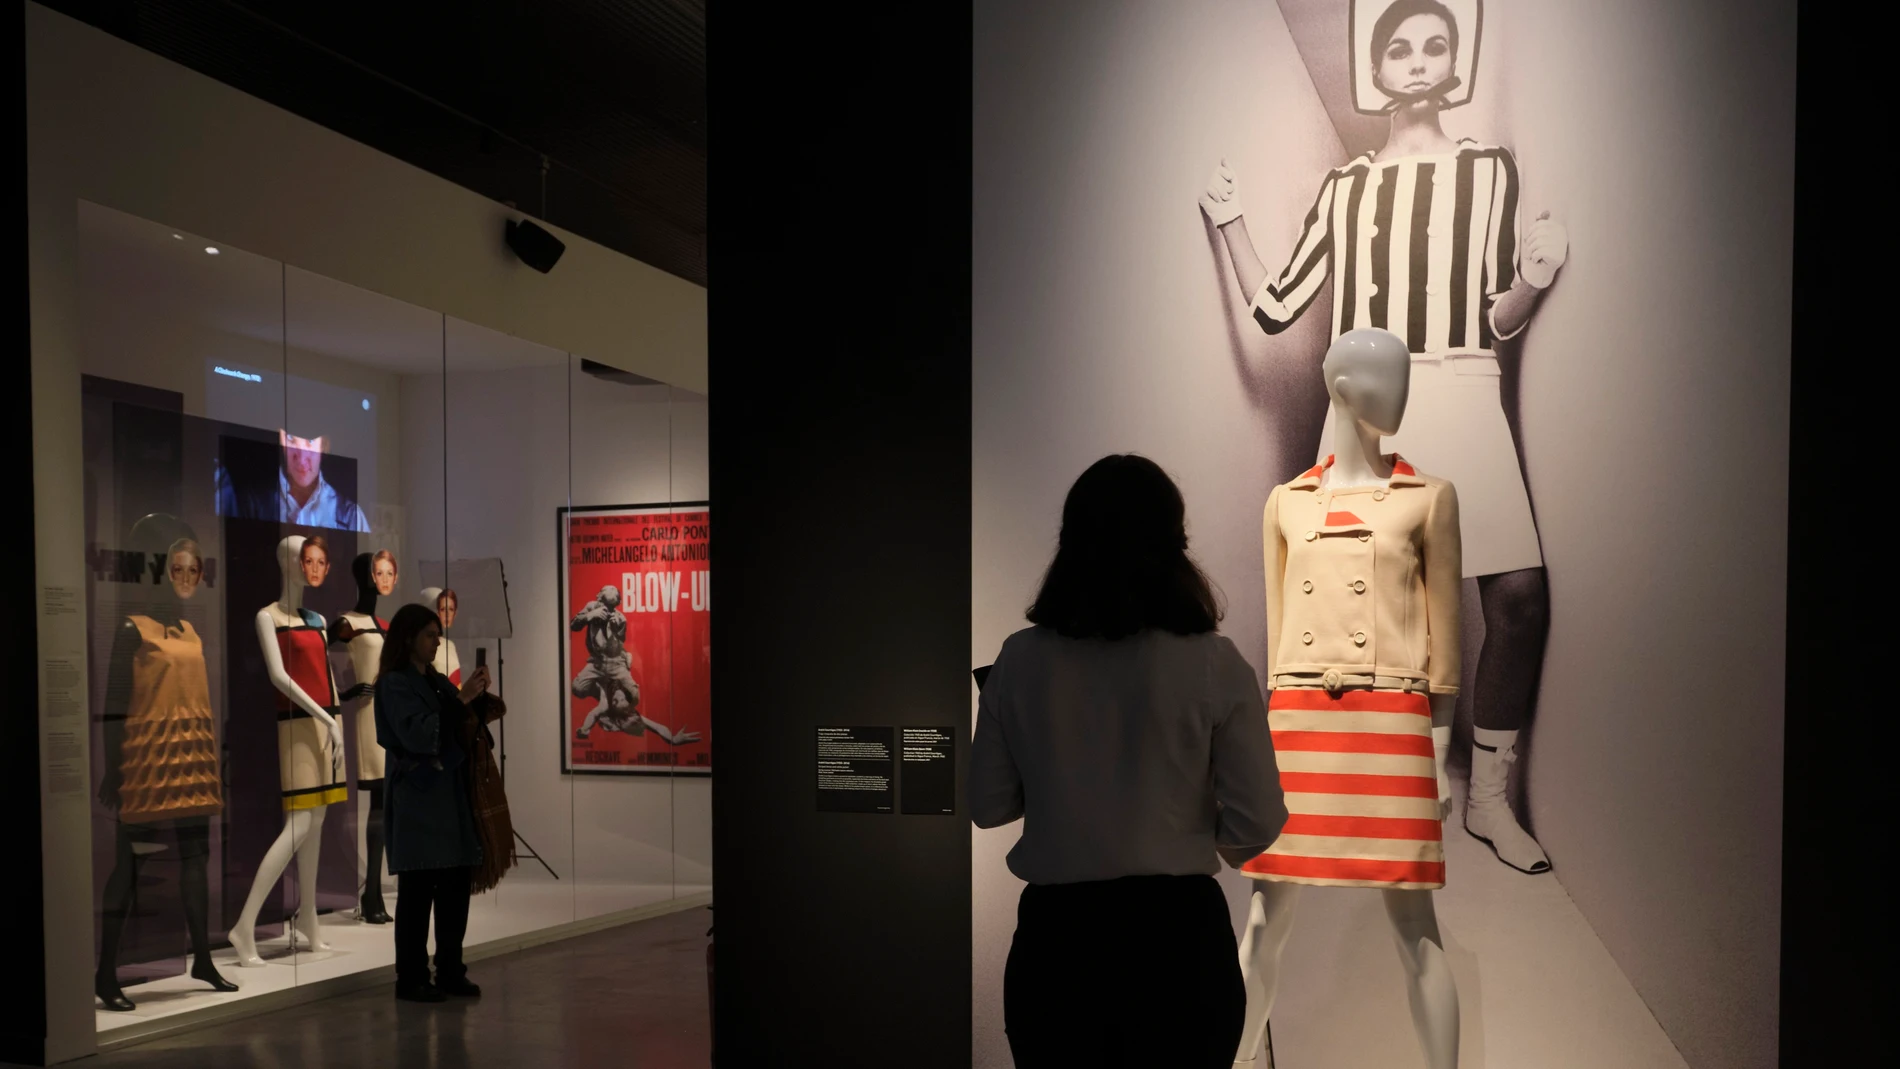 'Cine y moda. Por Jean Paul Gaultier' podrá verse en el CaixaFórum desde este jueves 24 de noviembre de 2022 hasta el 19 de marzo de 2023